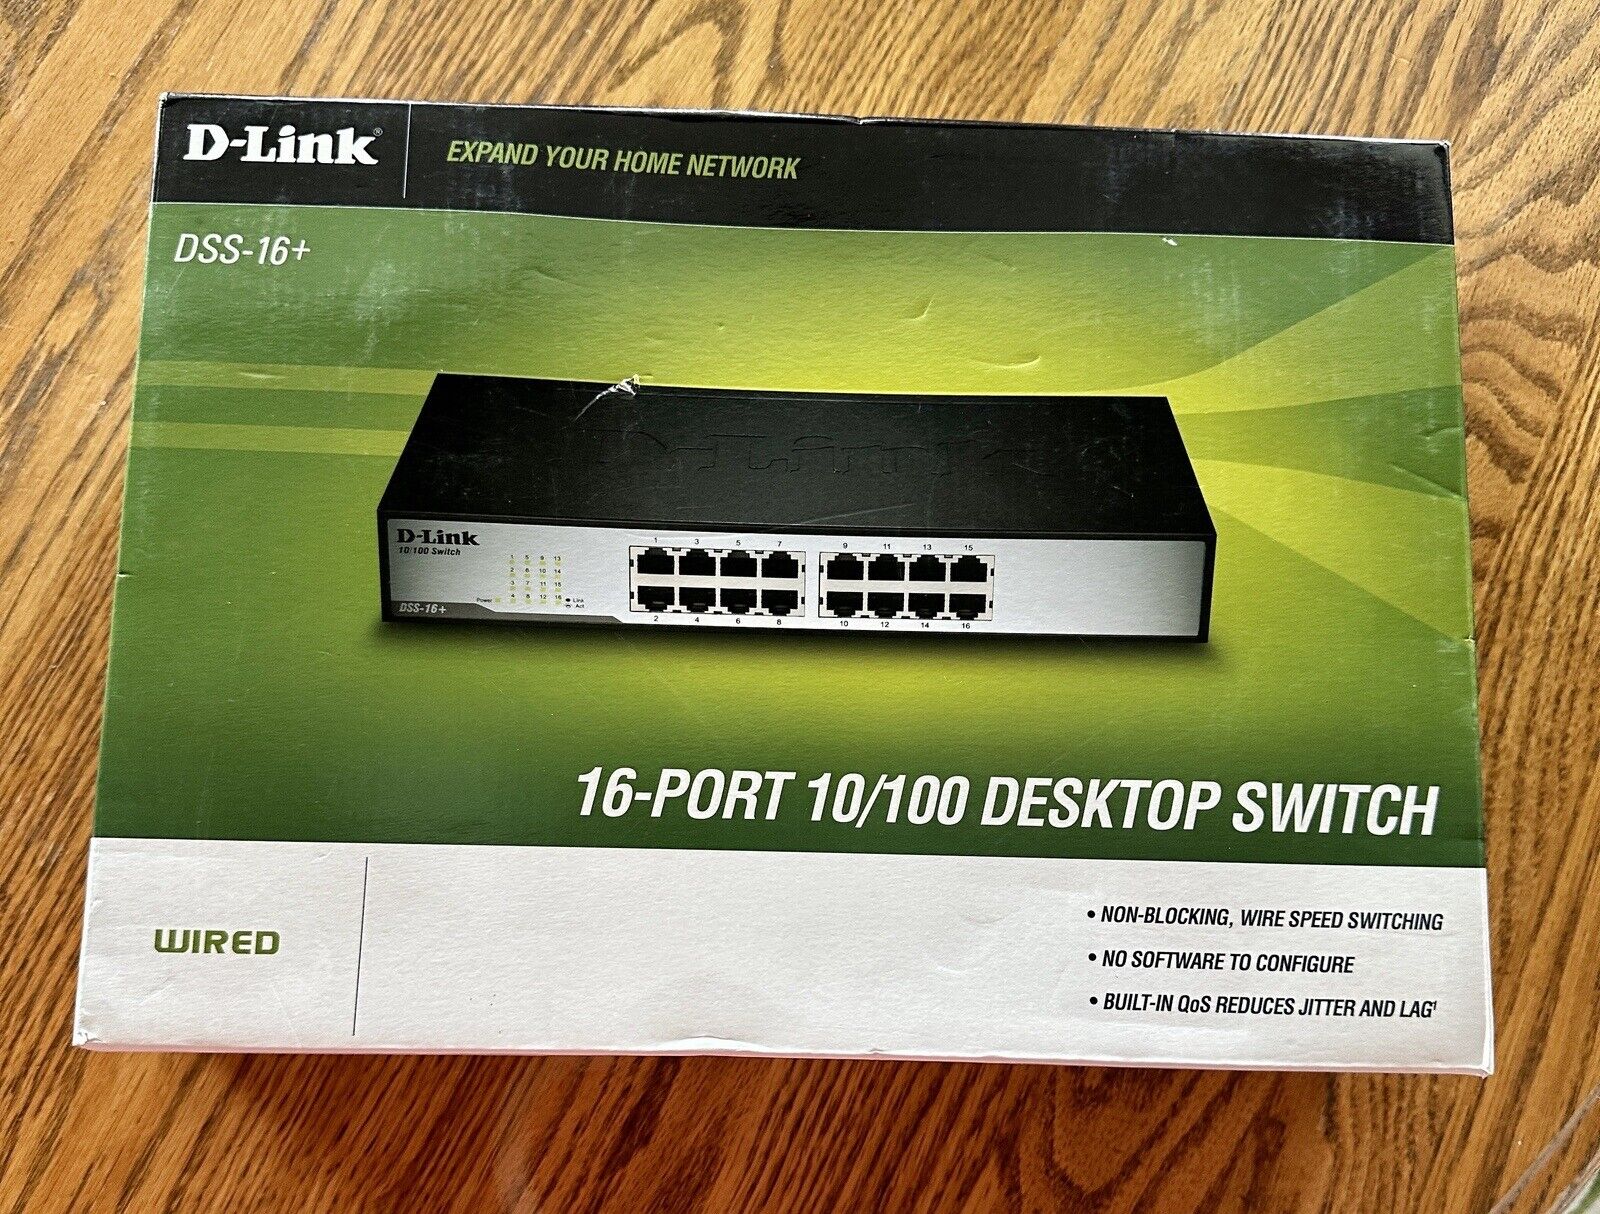 NEW D-Link DSS-16+ 16-Port 10/100 Unmanaged Desktop or Rackmount Switch